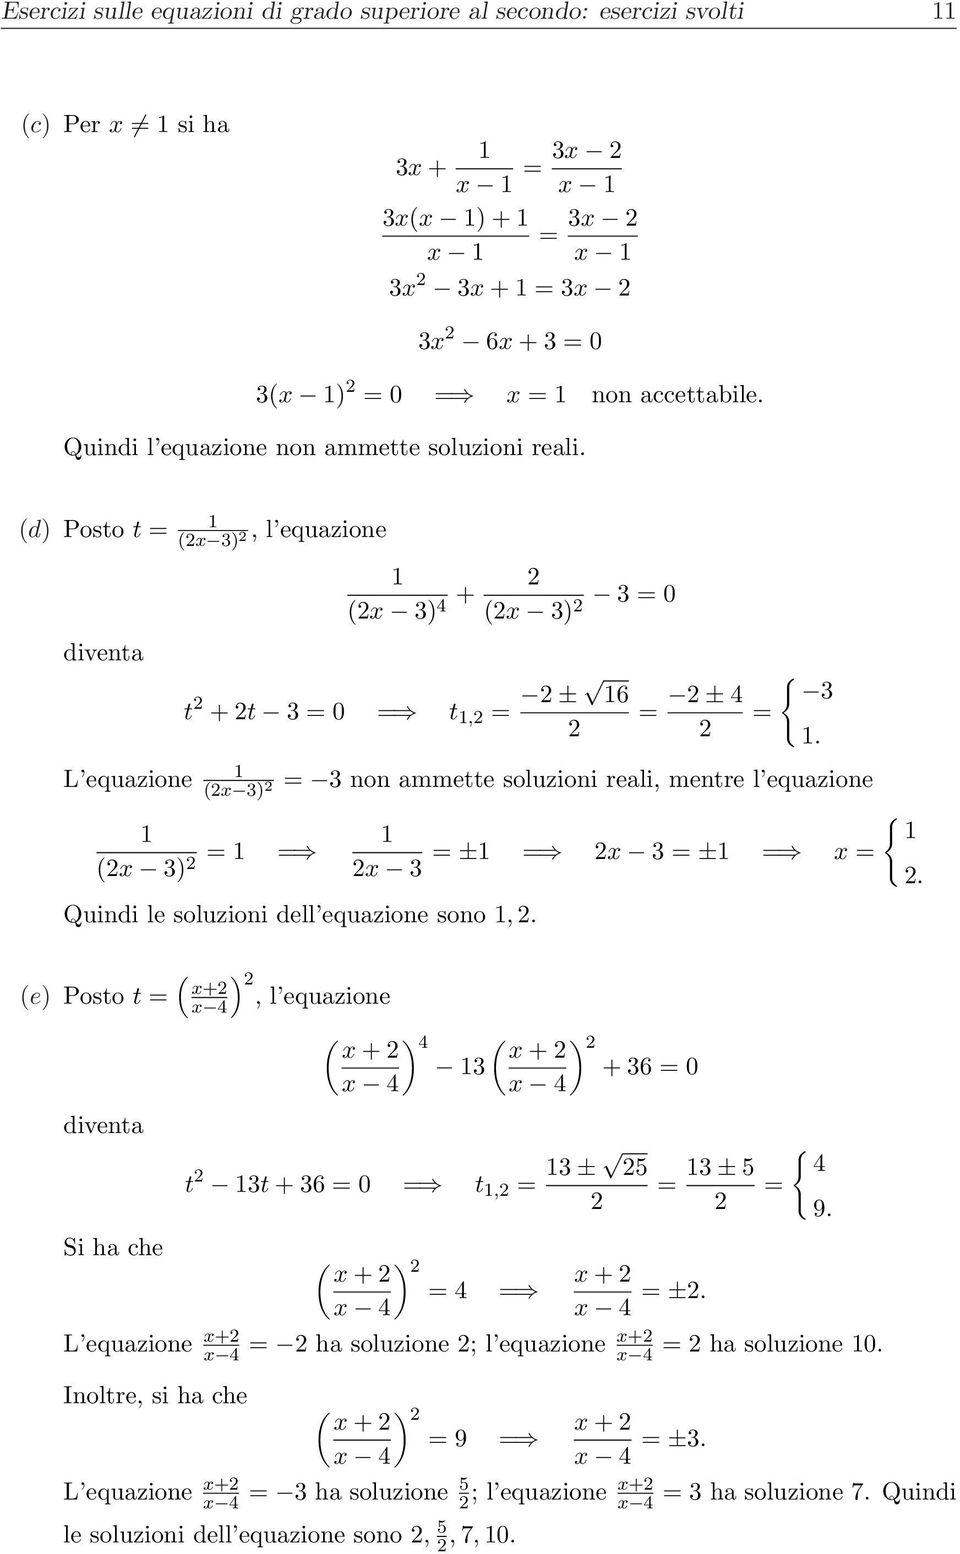 (d) Posto t = (x 3), l equazione diventa (x 3) 4 + (x 3) 3 = 0 t + t 3 = 0 t, = ± 6 = ± 4 = { 3 L equazione = 3 non ammette soluzioni reali, mentre l equazione (x 3) { (x 3) = = ± x 3 = ± x = x 3.